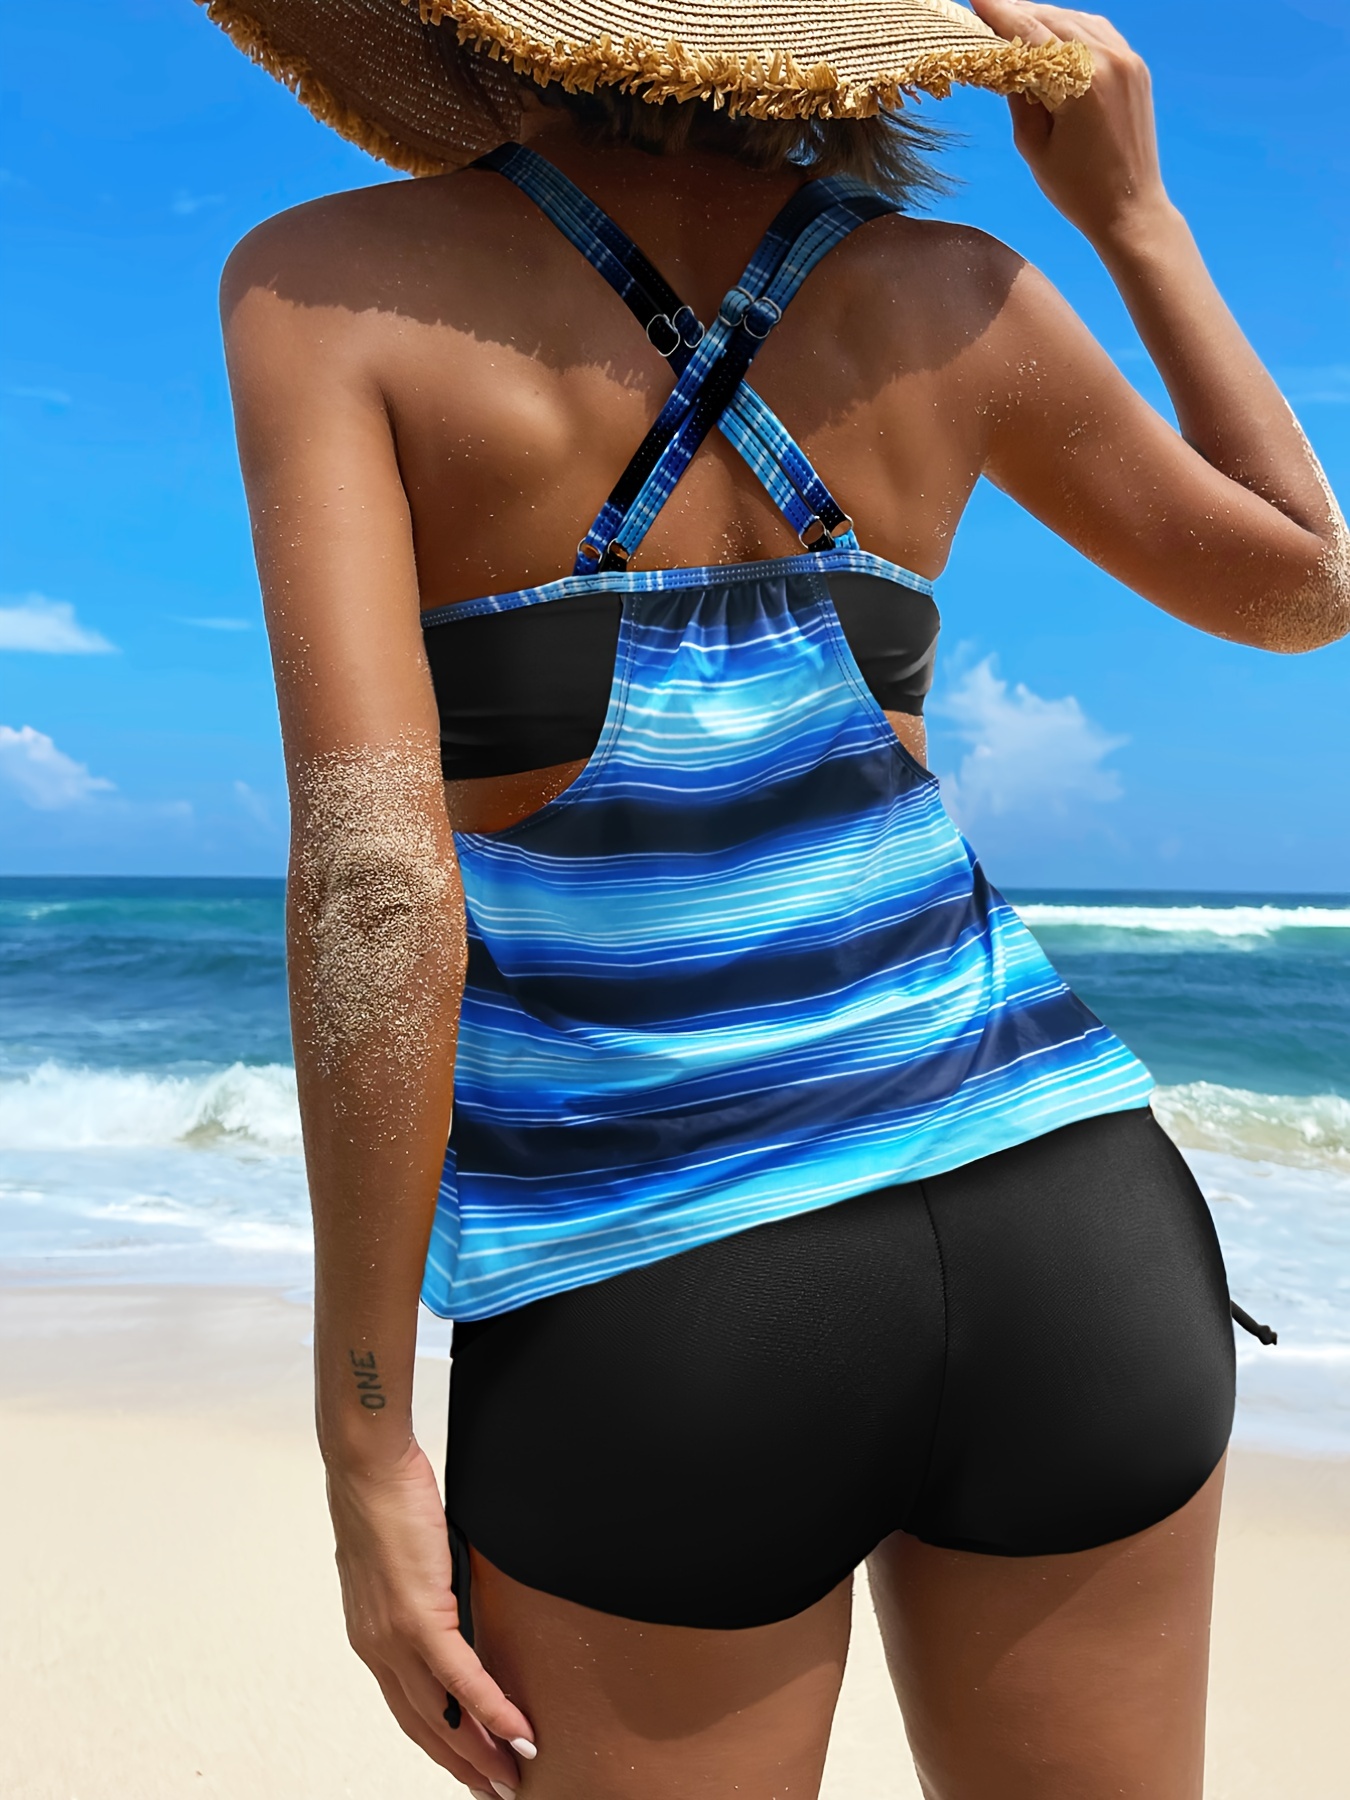 Striped Print Tie Side High Waist Criss Cross Back Blue & Black Color Two  Piece Tankini Sets Swimsuit, Women's Swimwear